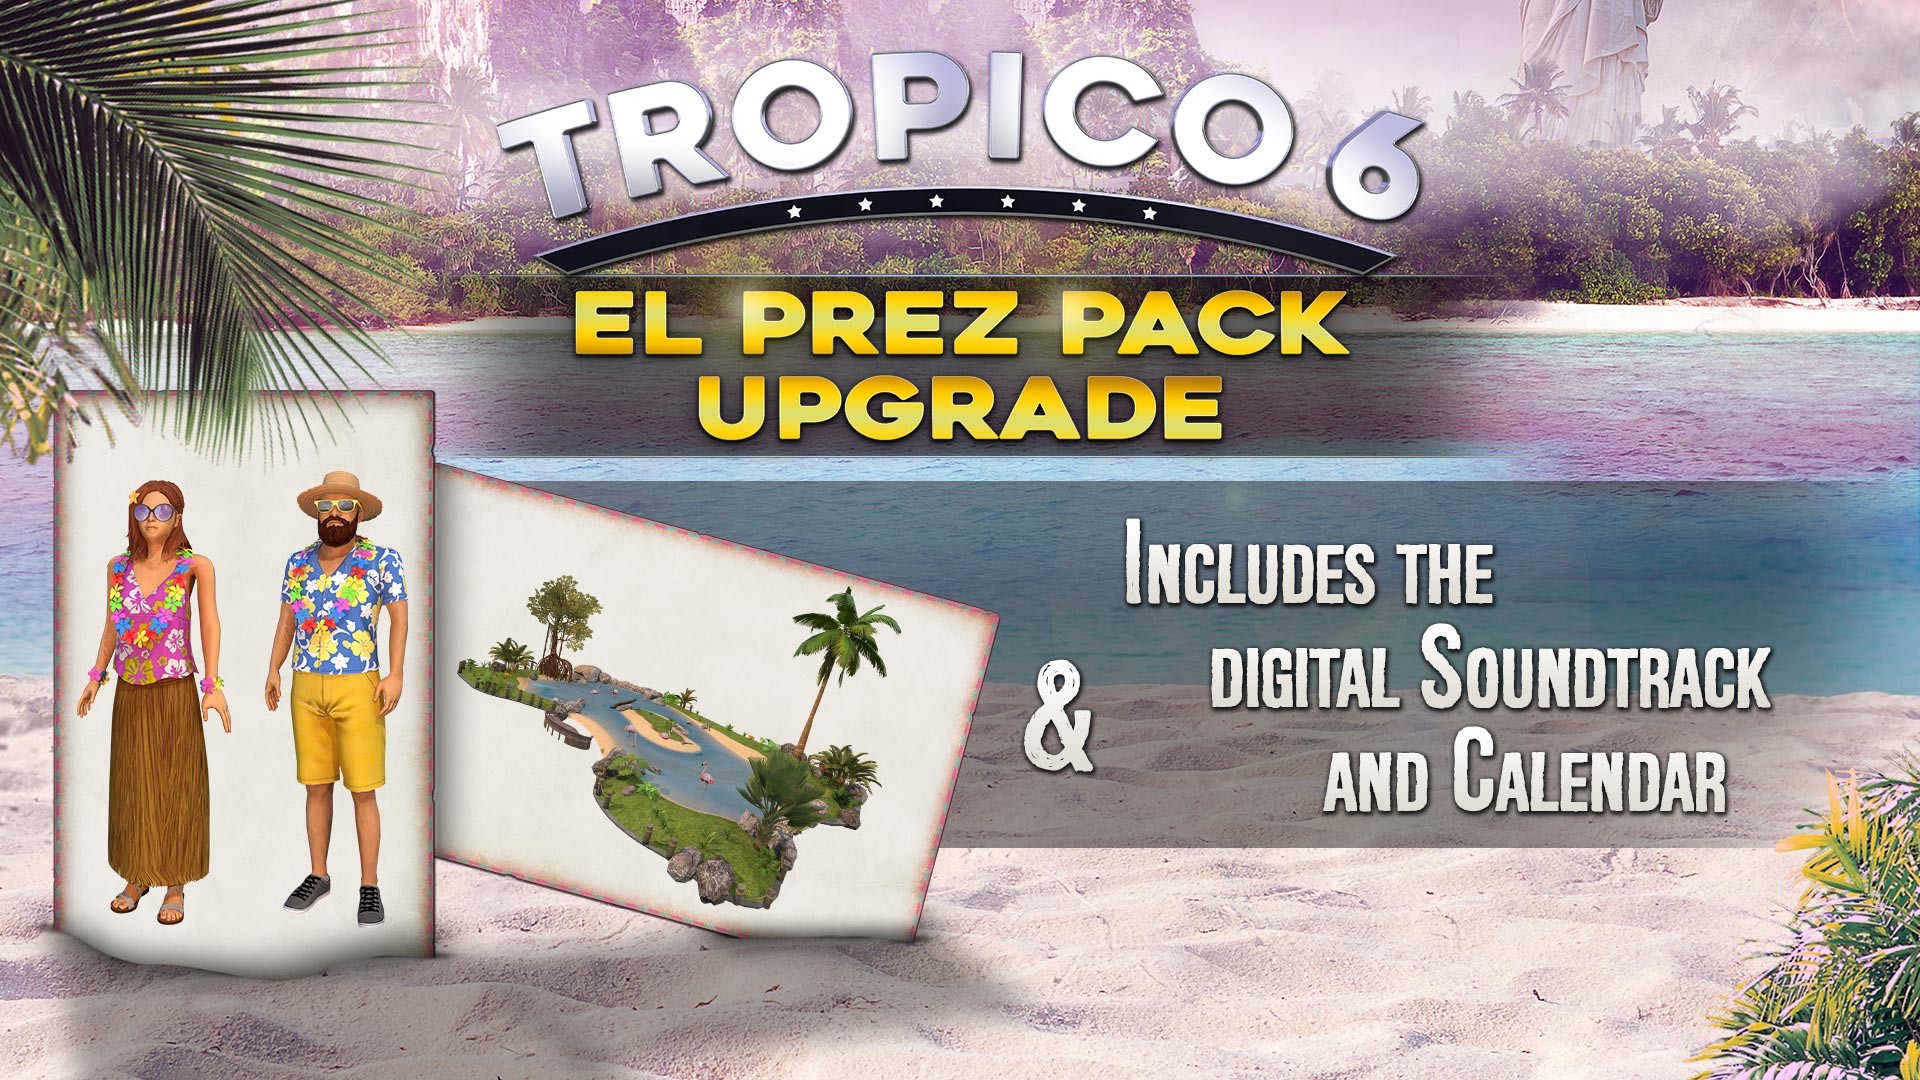 Tropico 6 - El Prez Edition Upgrade on Steam